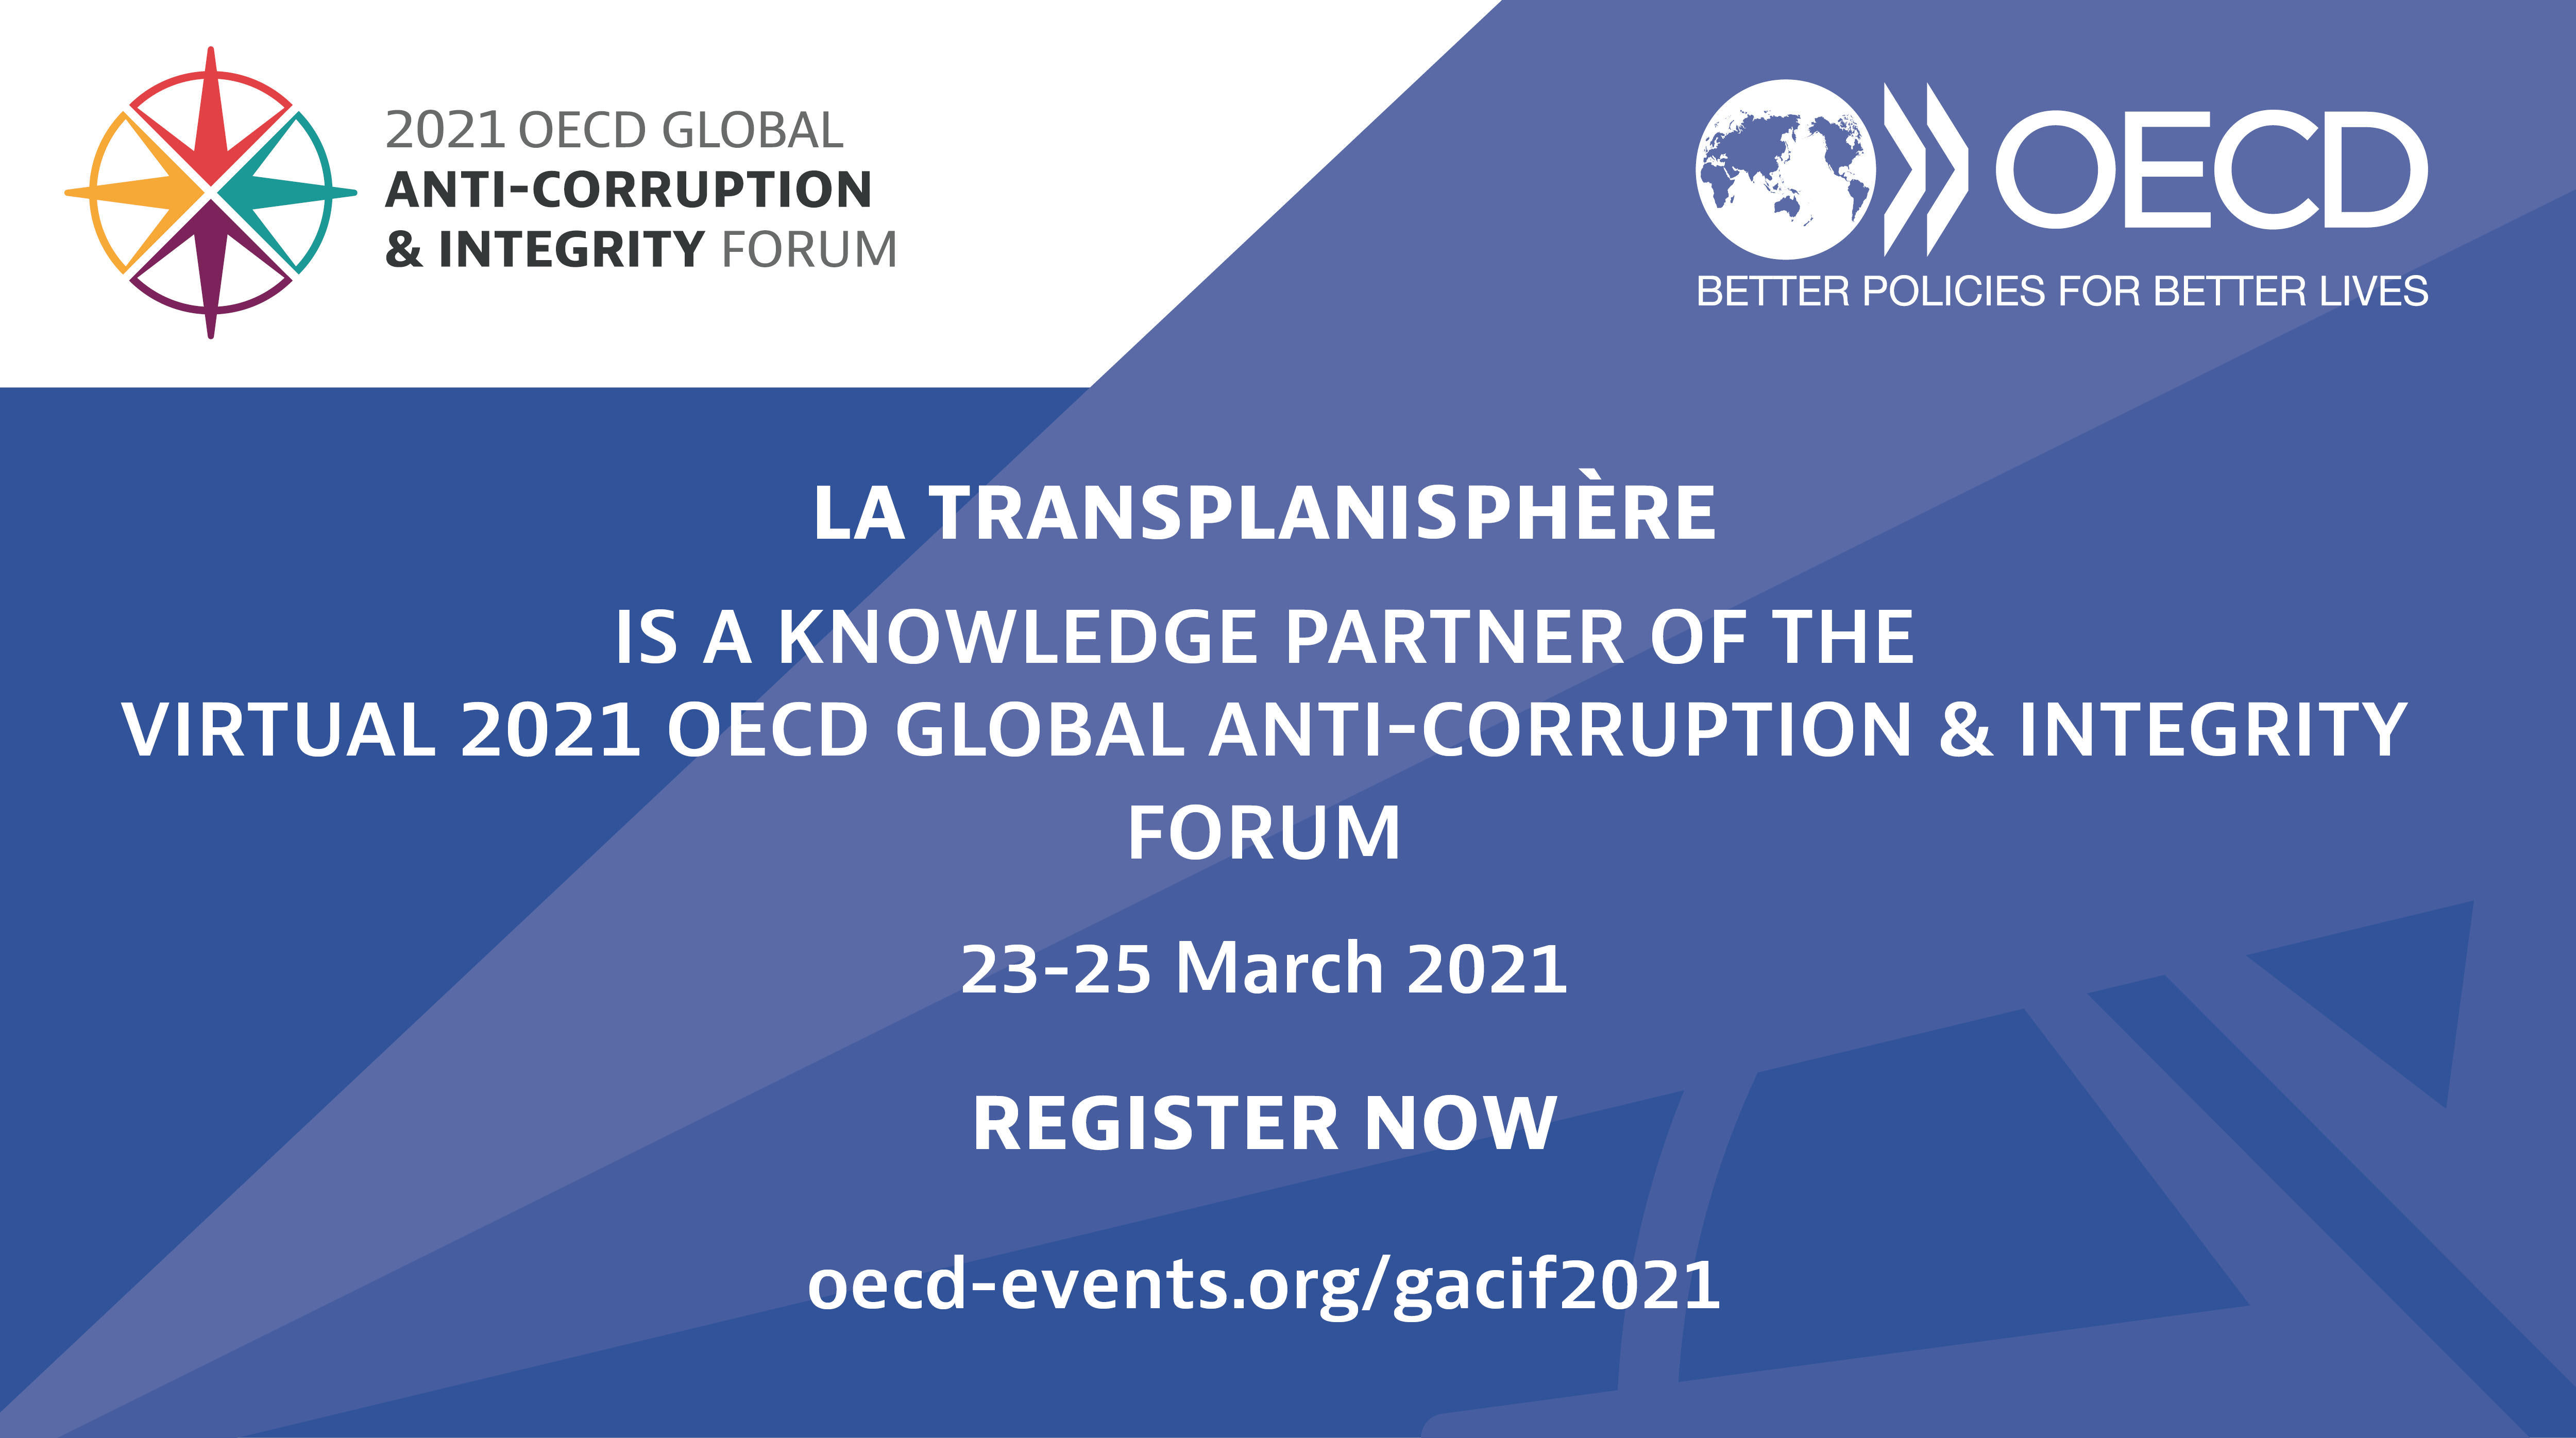 Die European Integrity Games nehmen am Globalen Integritätsforum der OECD 2021 teil